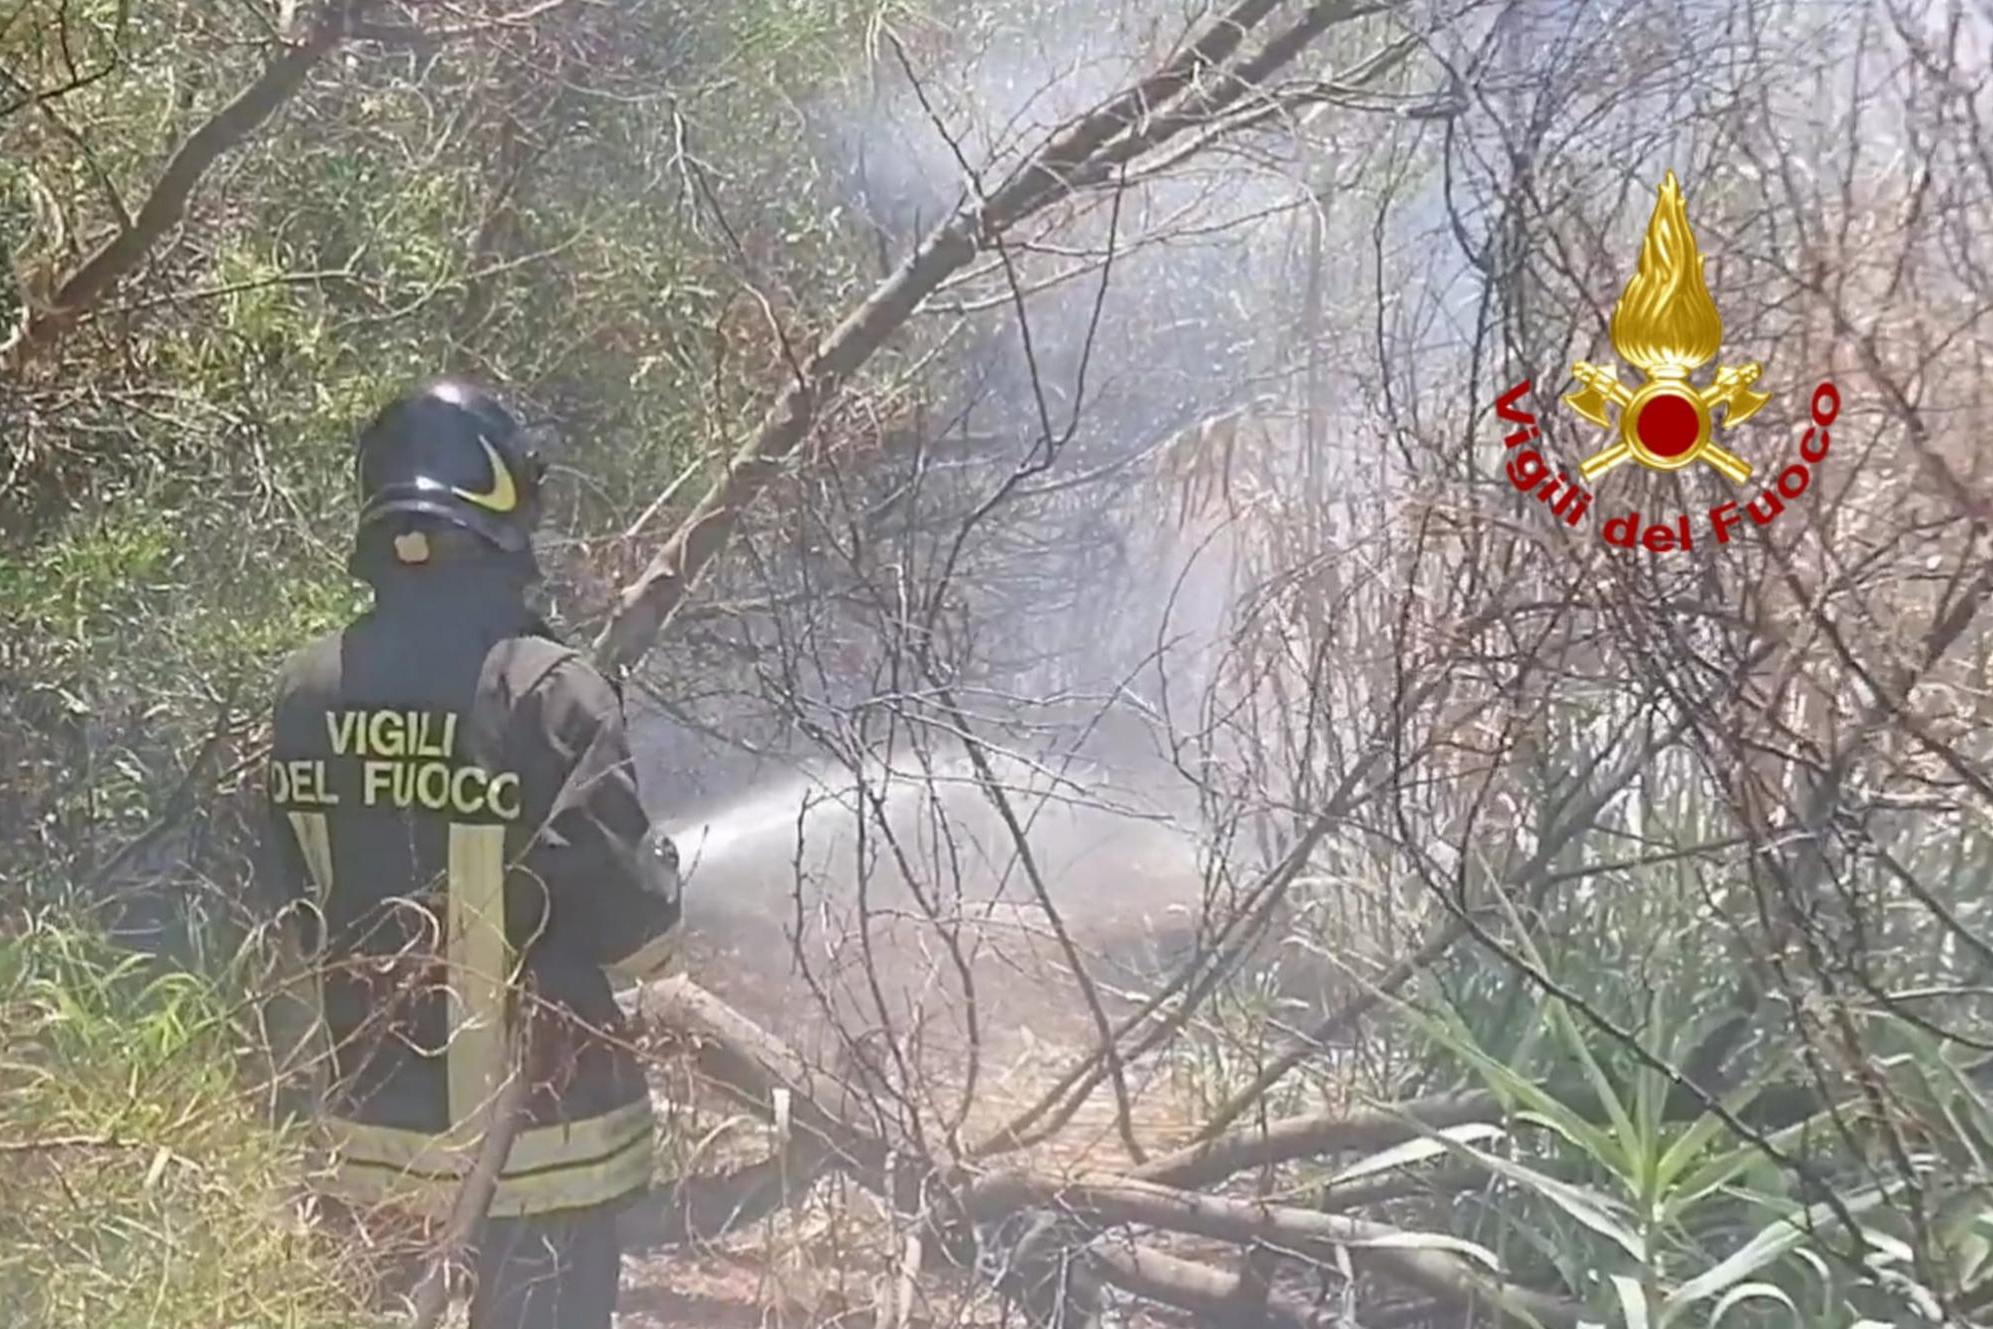 Sterpaglie e vegetazione a fuoco ovunque, giornata di superlavoro per i pompieri di Cagliari